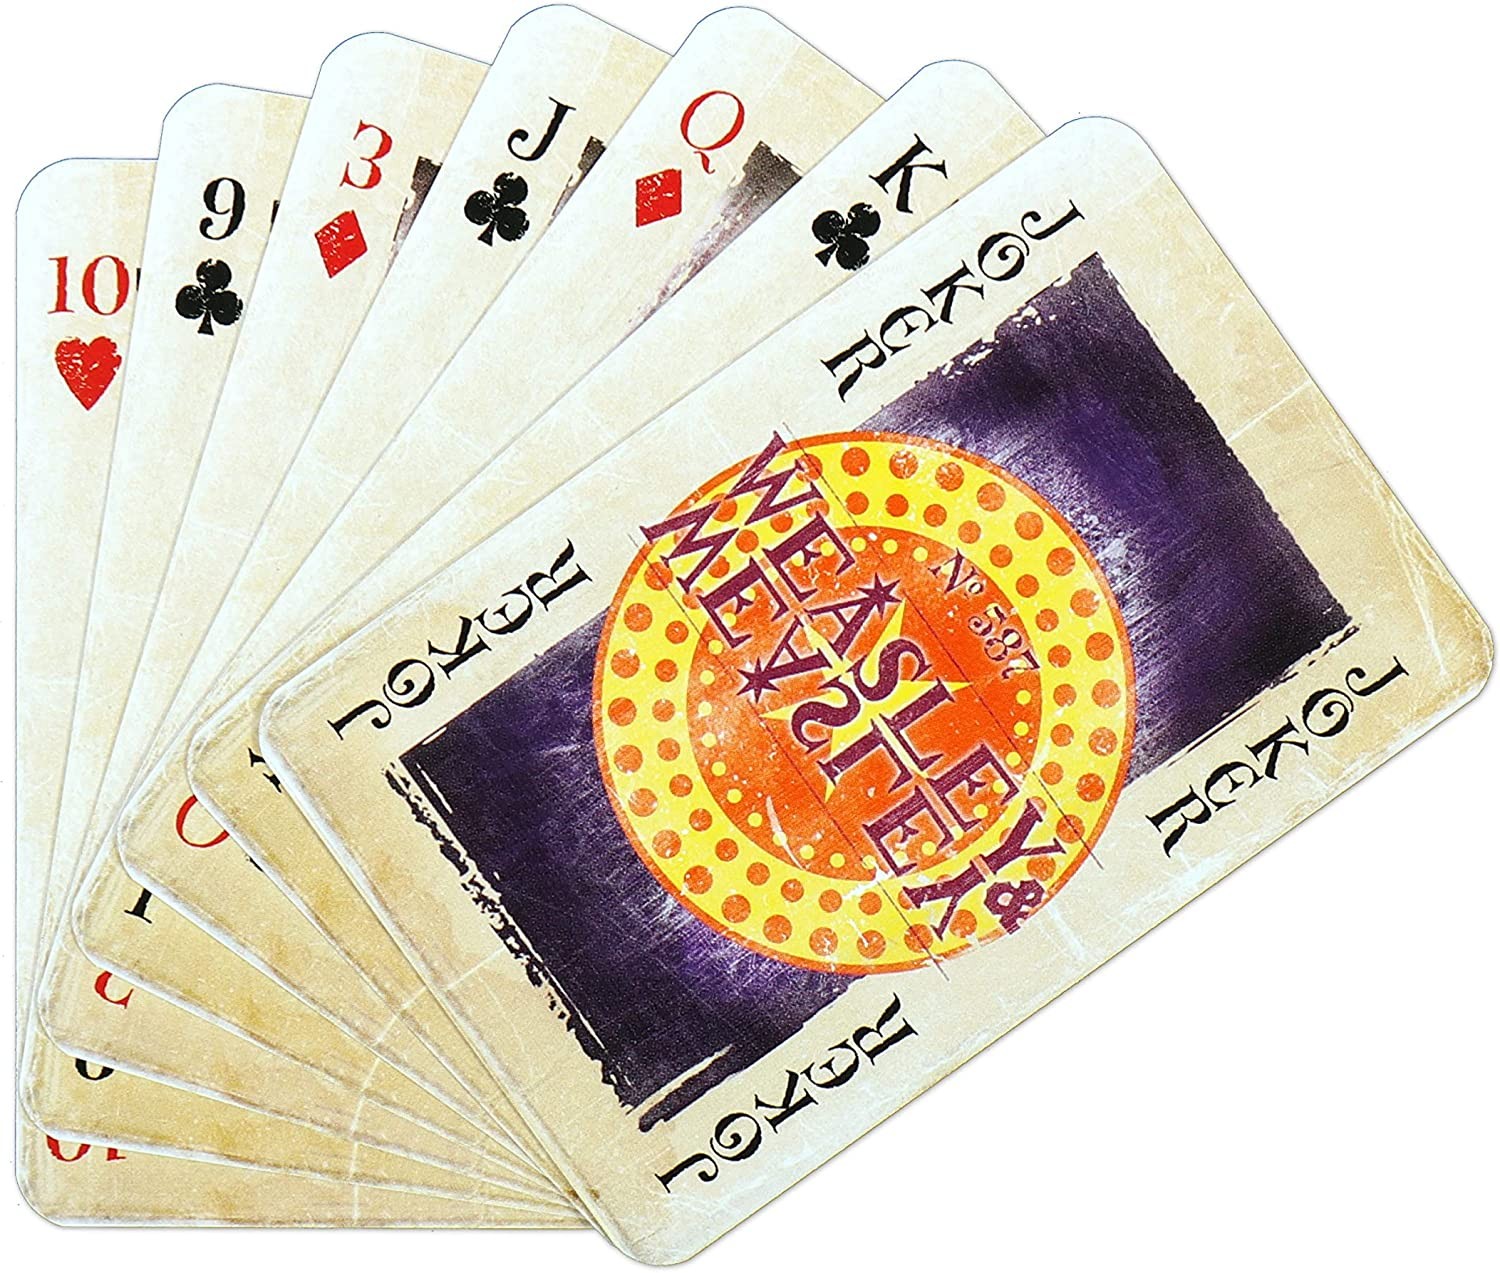 Acheter Jeu de 54 cartes - Harry Potter - Jeux de société - Winning